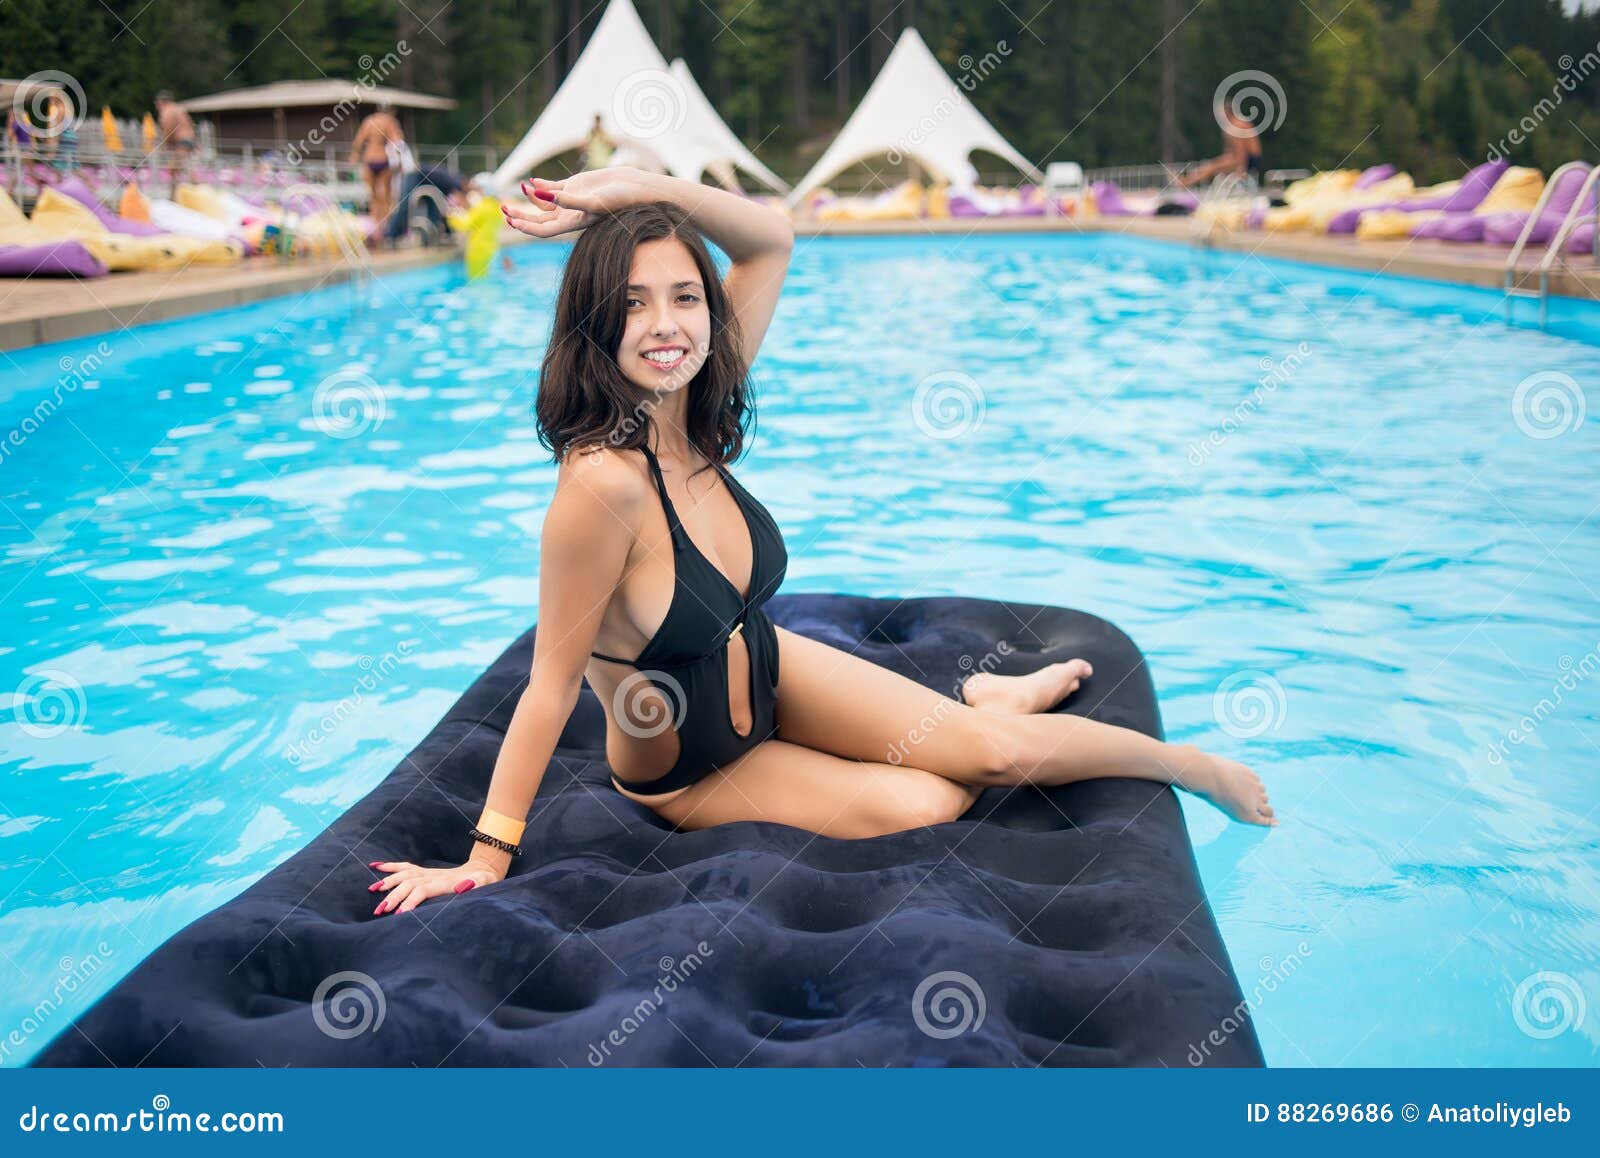 Beautiful Brunette Female In Black Bikini Lying On An Inflatable